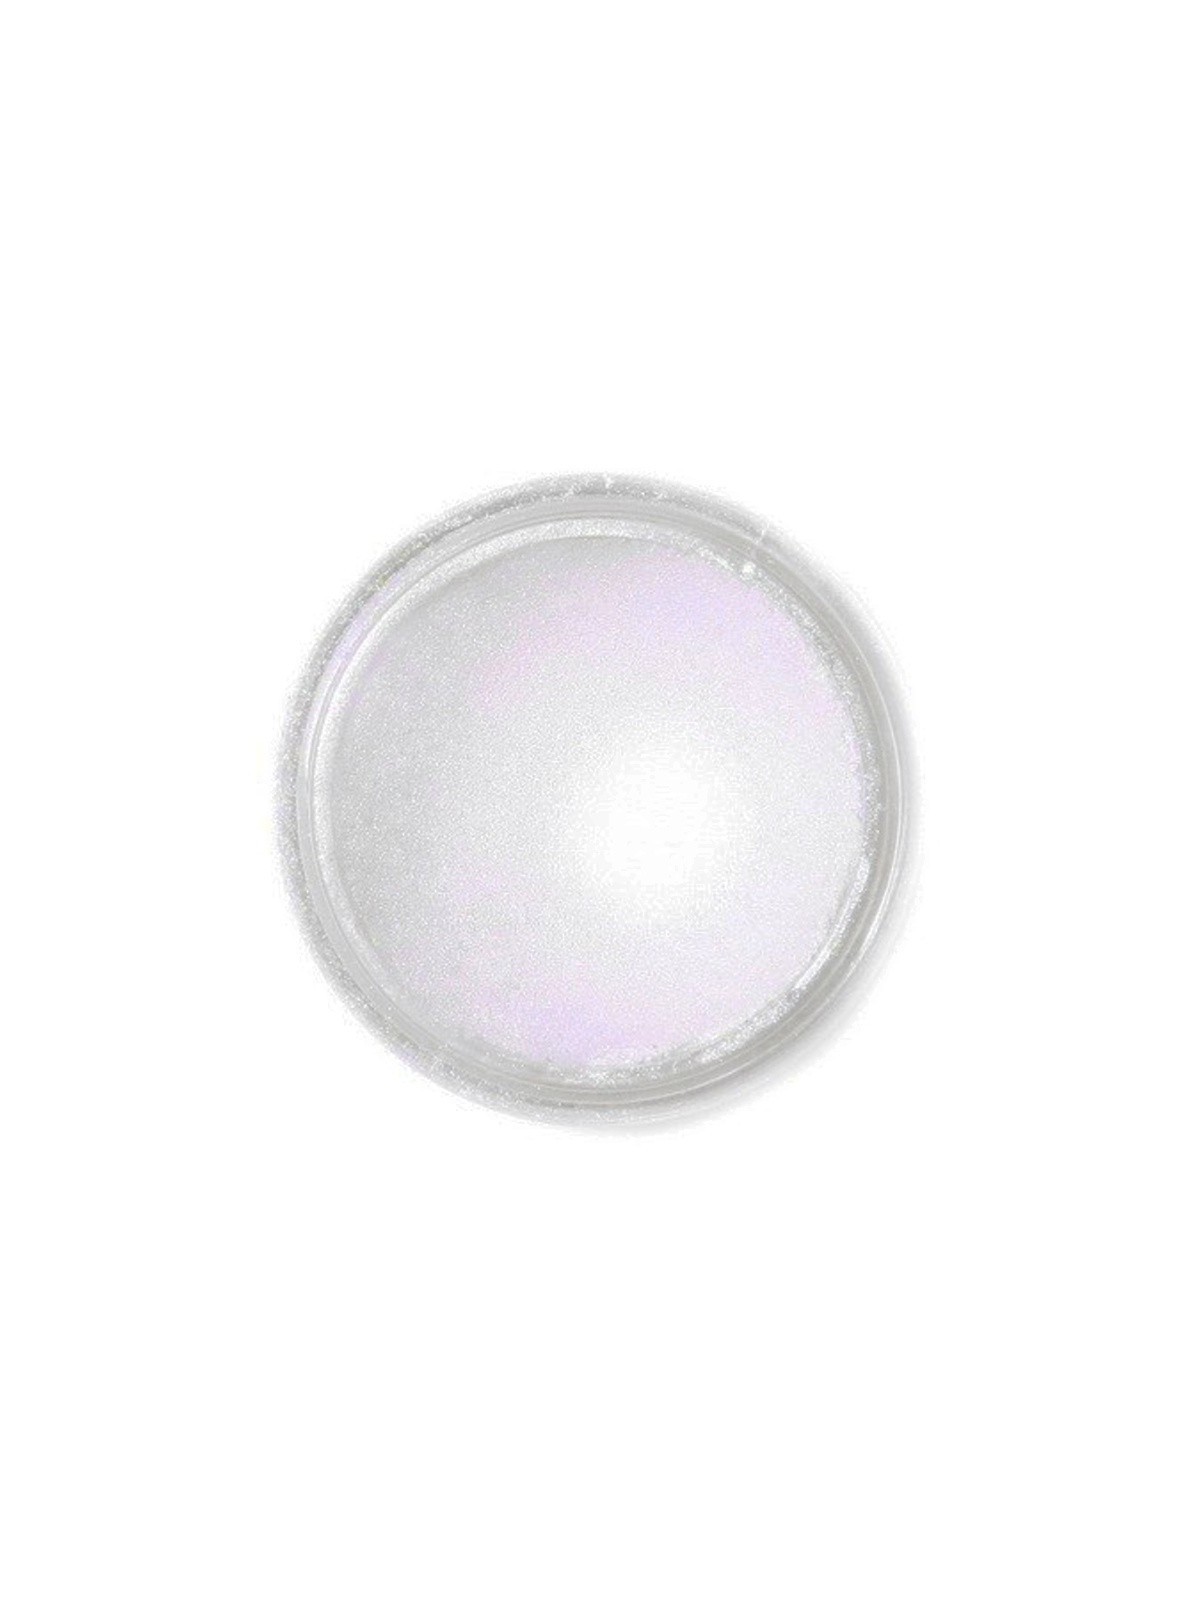 Jedlá prachová perleťová barva Fractal - Shell Nacre Blue (4,5 g)